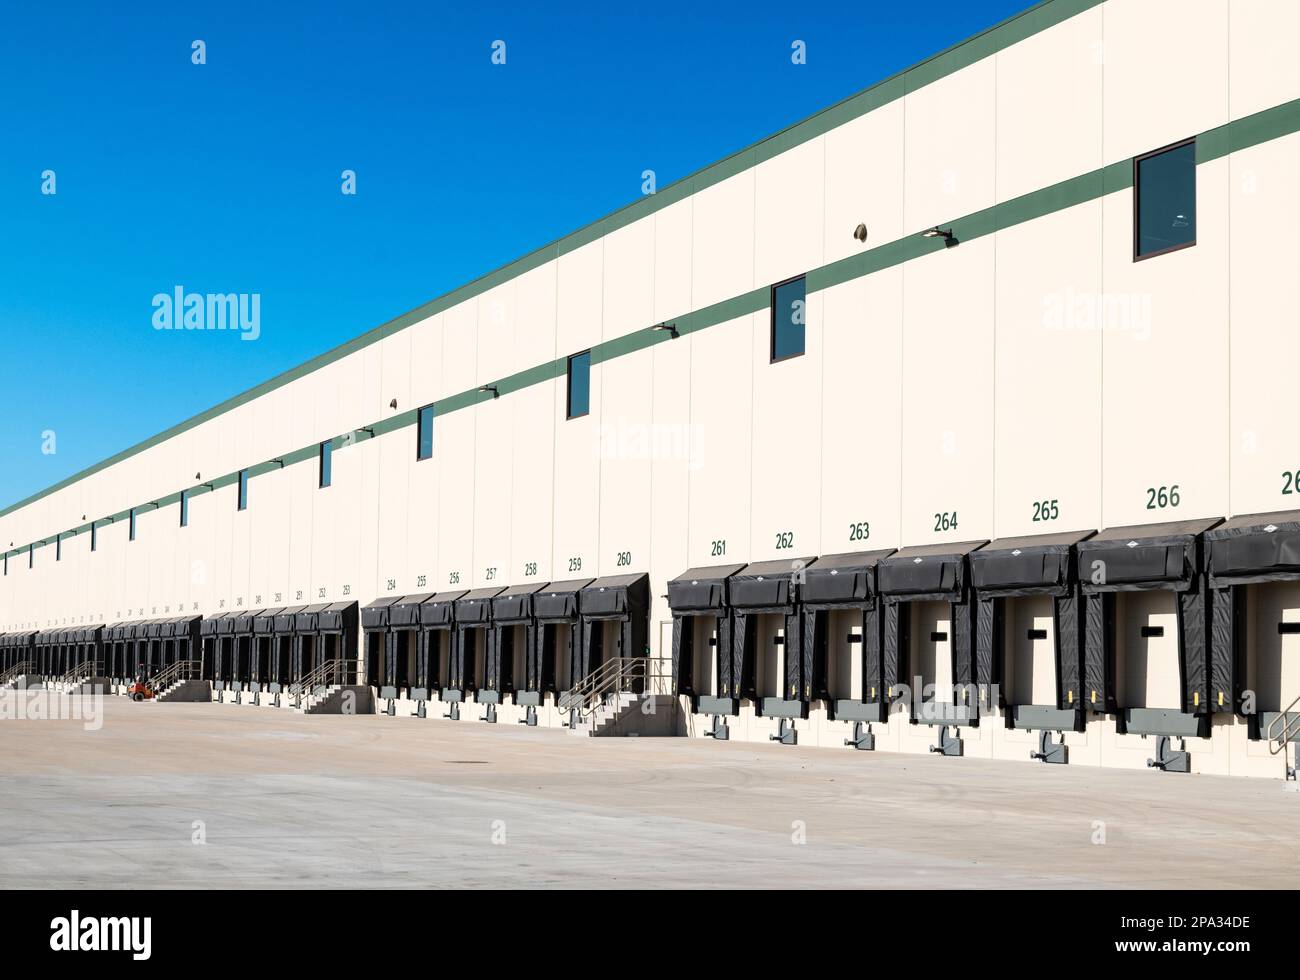 Baies de chargement de camions dans un grand entrepôt de distribution. Banque D'Images